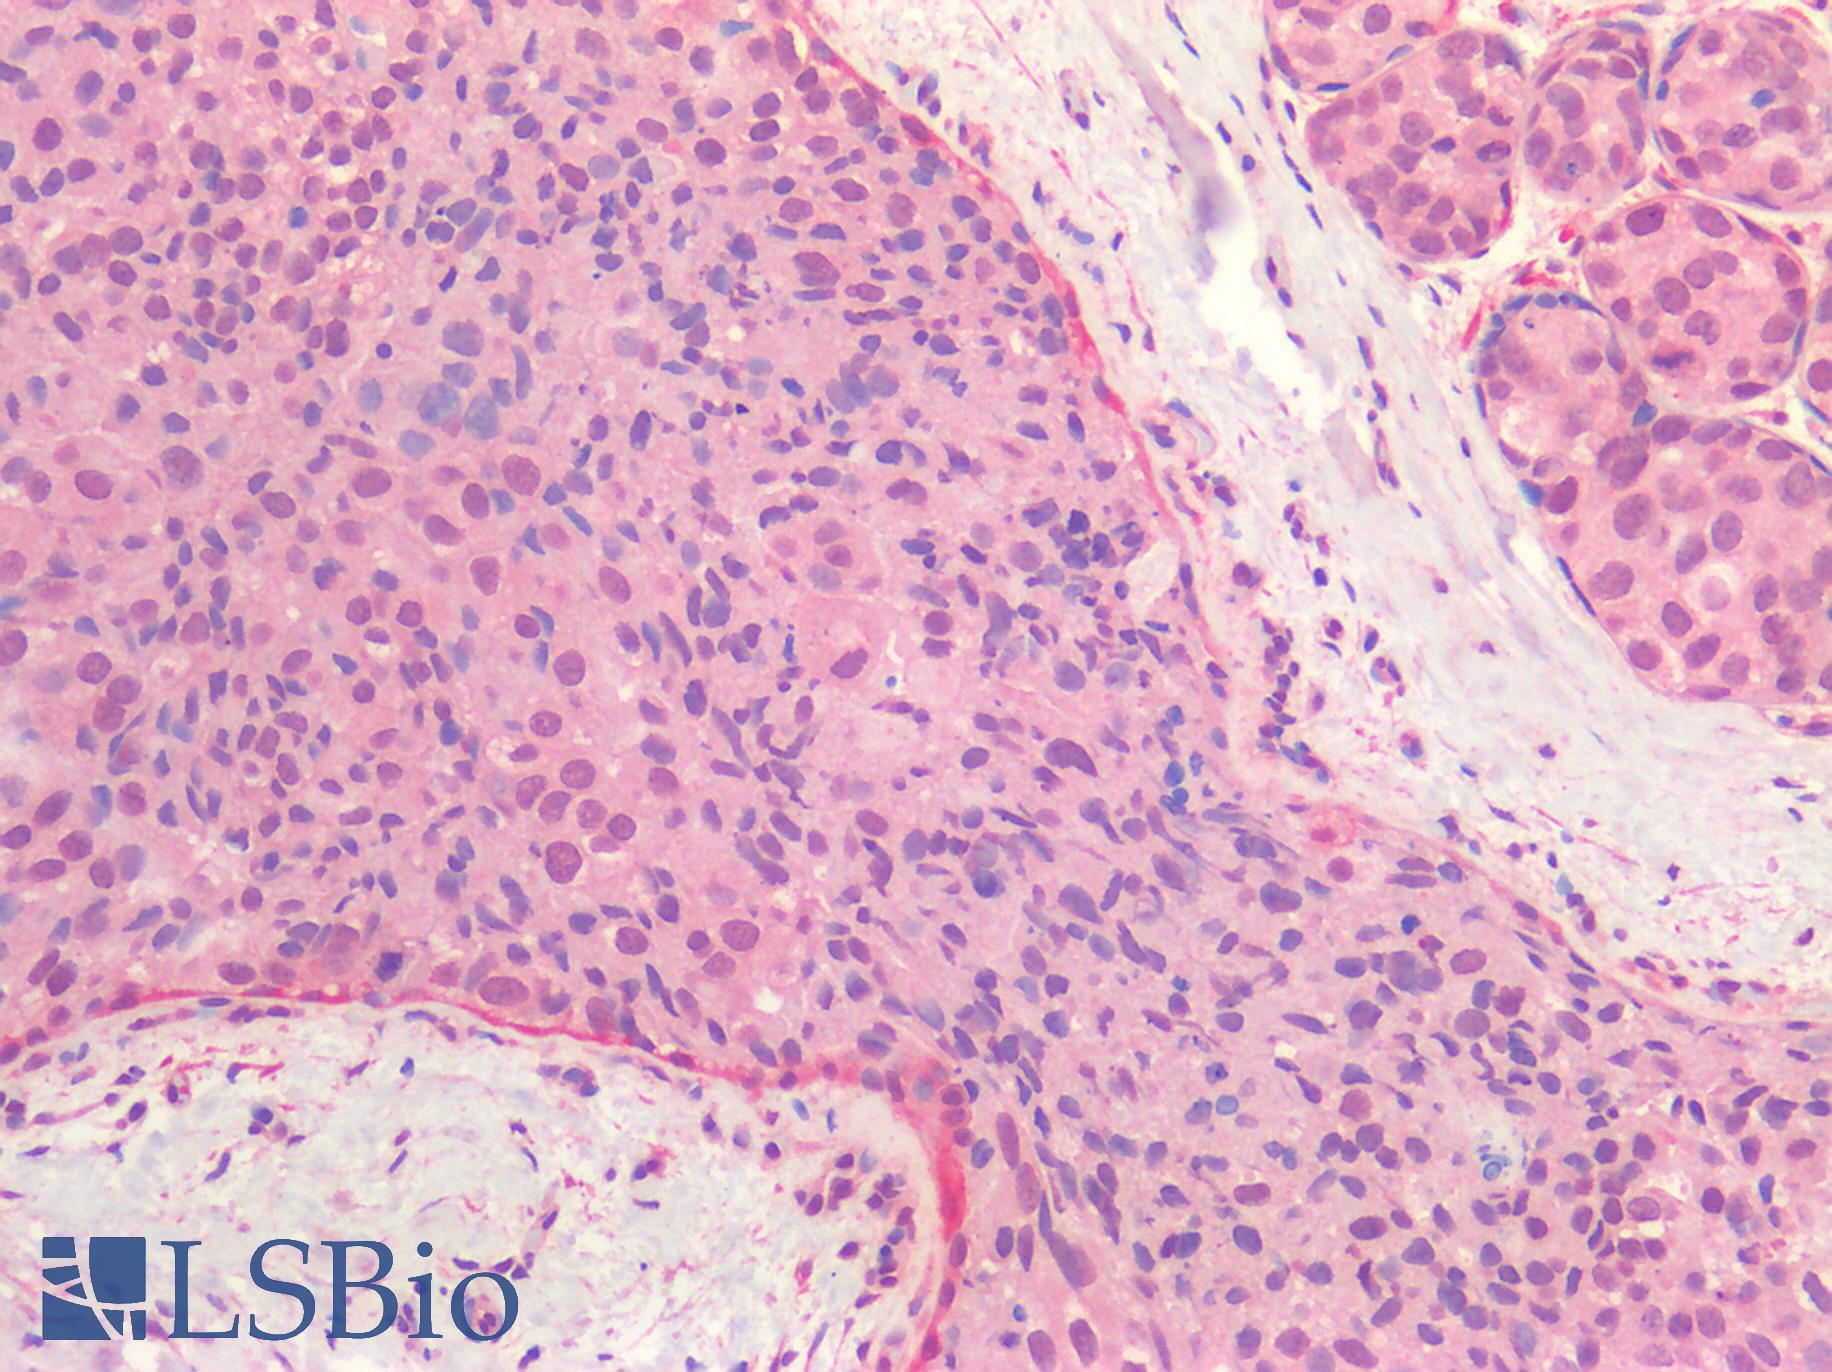 ER Alpha / Estrogen Receptor Antibody - Human Breast, Carcinoma: Formalin-Fixed, Paraffin-Embedded (FFPE)